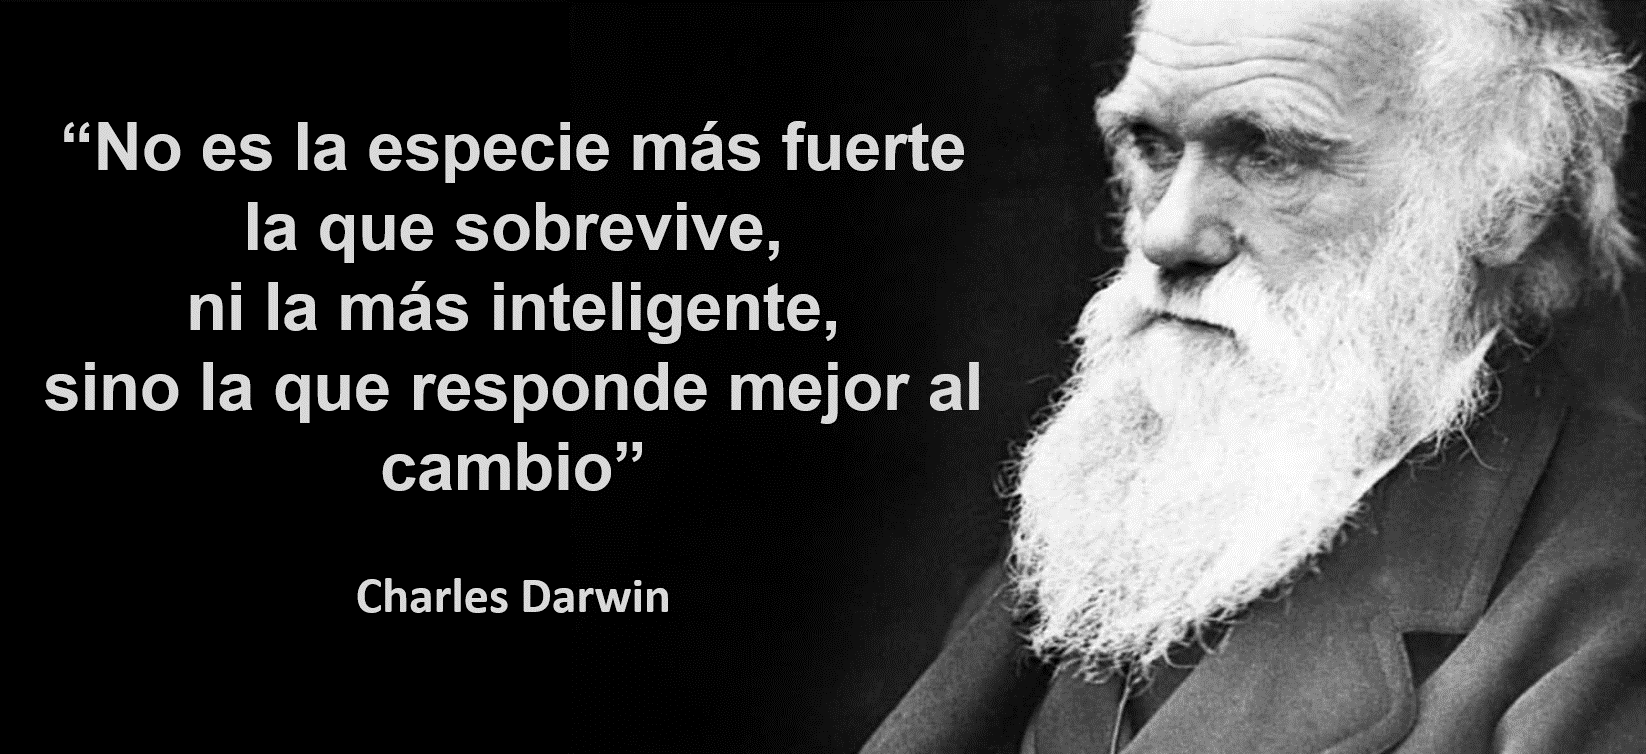 teoria de la evolucion de darwin aplicada a las empresas